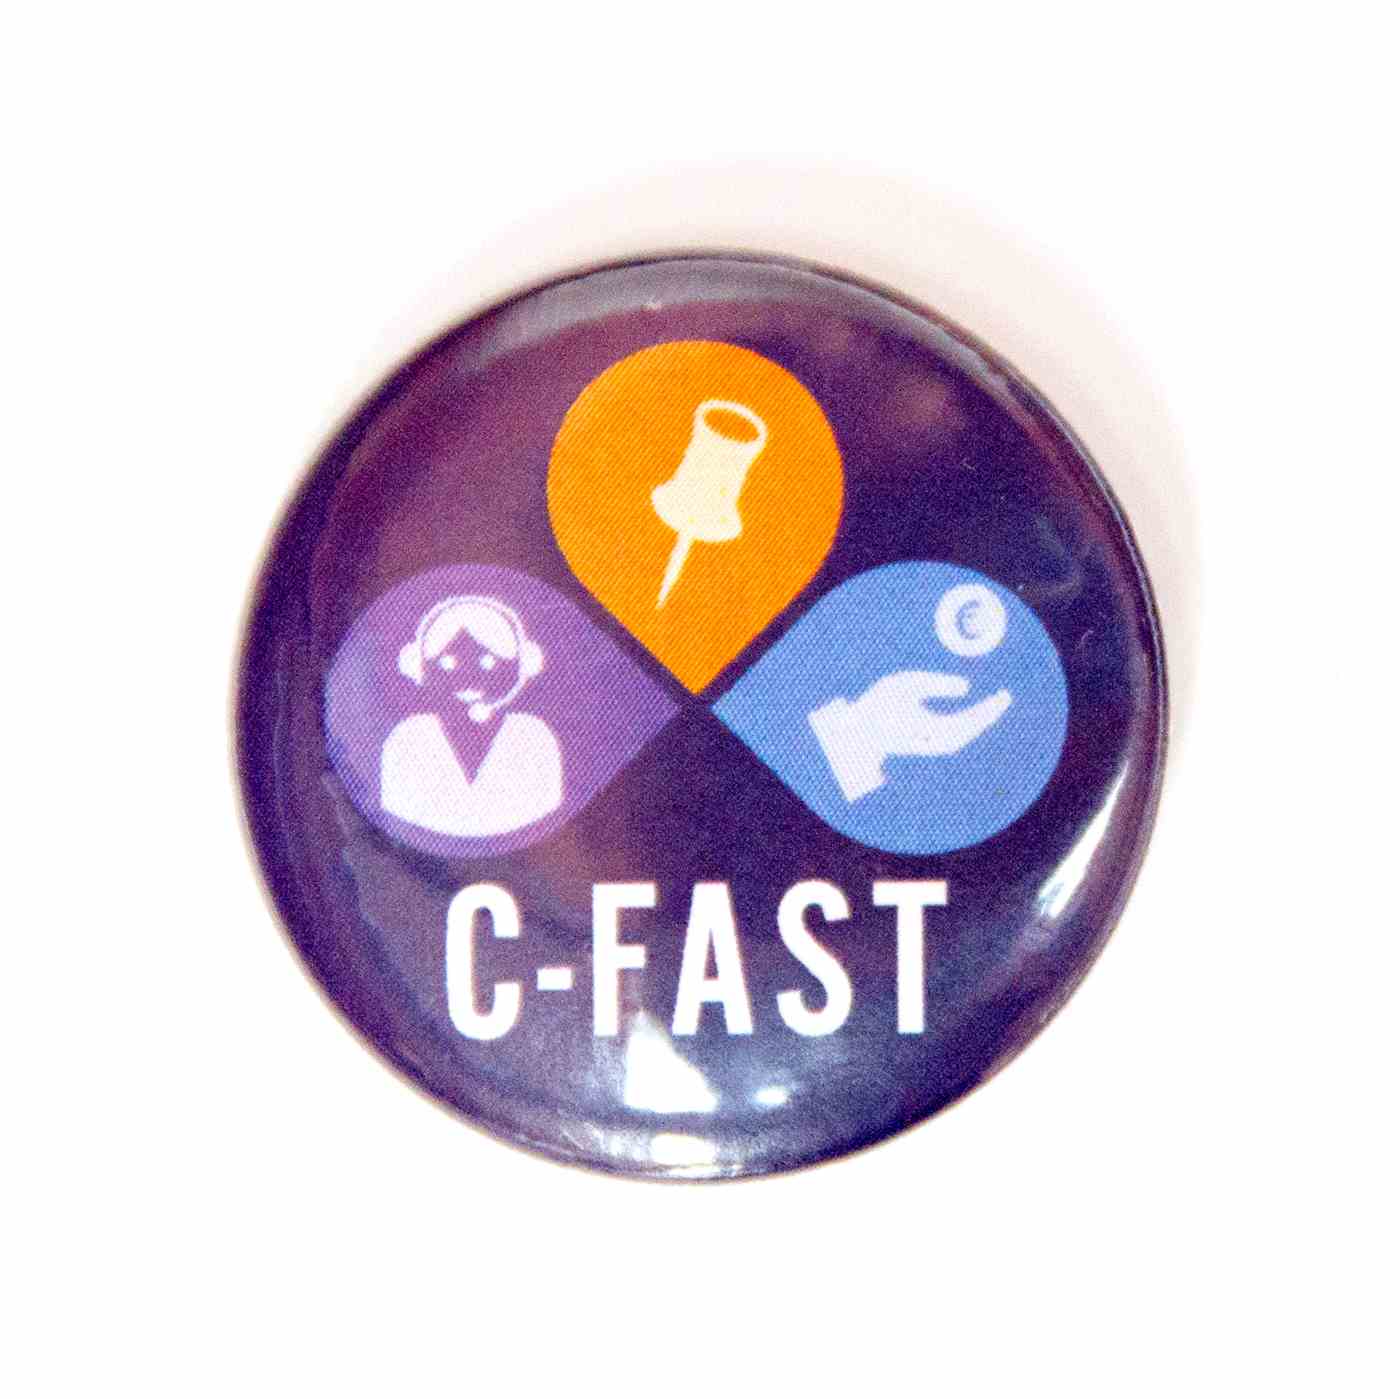 Cevora C-FAST button